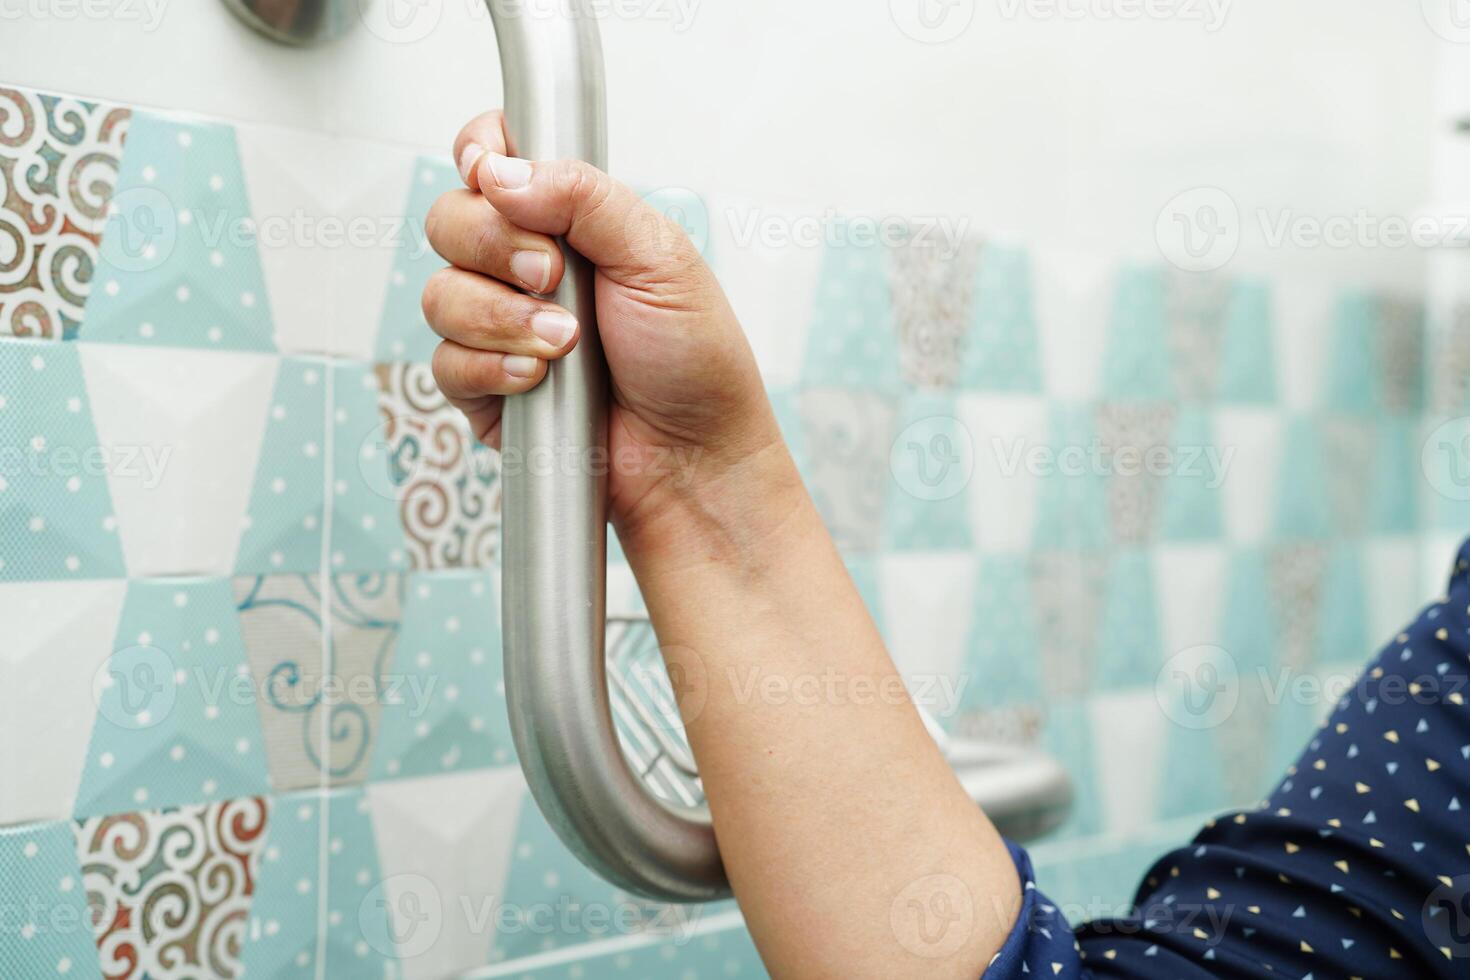 une patiente asiatique utilise le rail de support des toilettes dans la salle de bain, la barre d'appui de sécurité de la main courante, la sécurité dans l'hôpital de soins infirmiers. photo